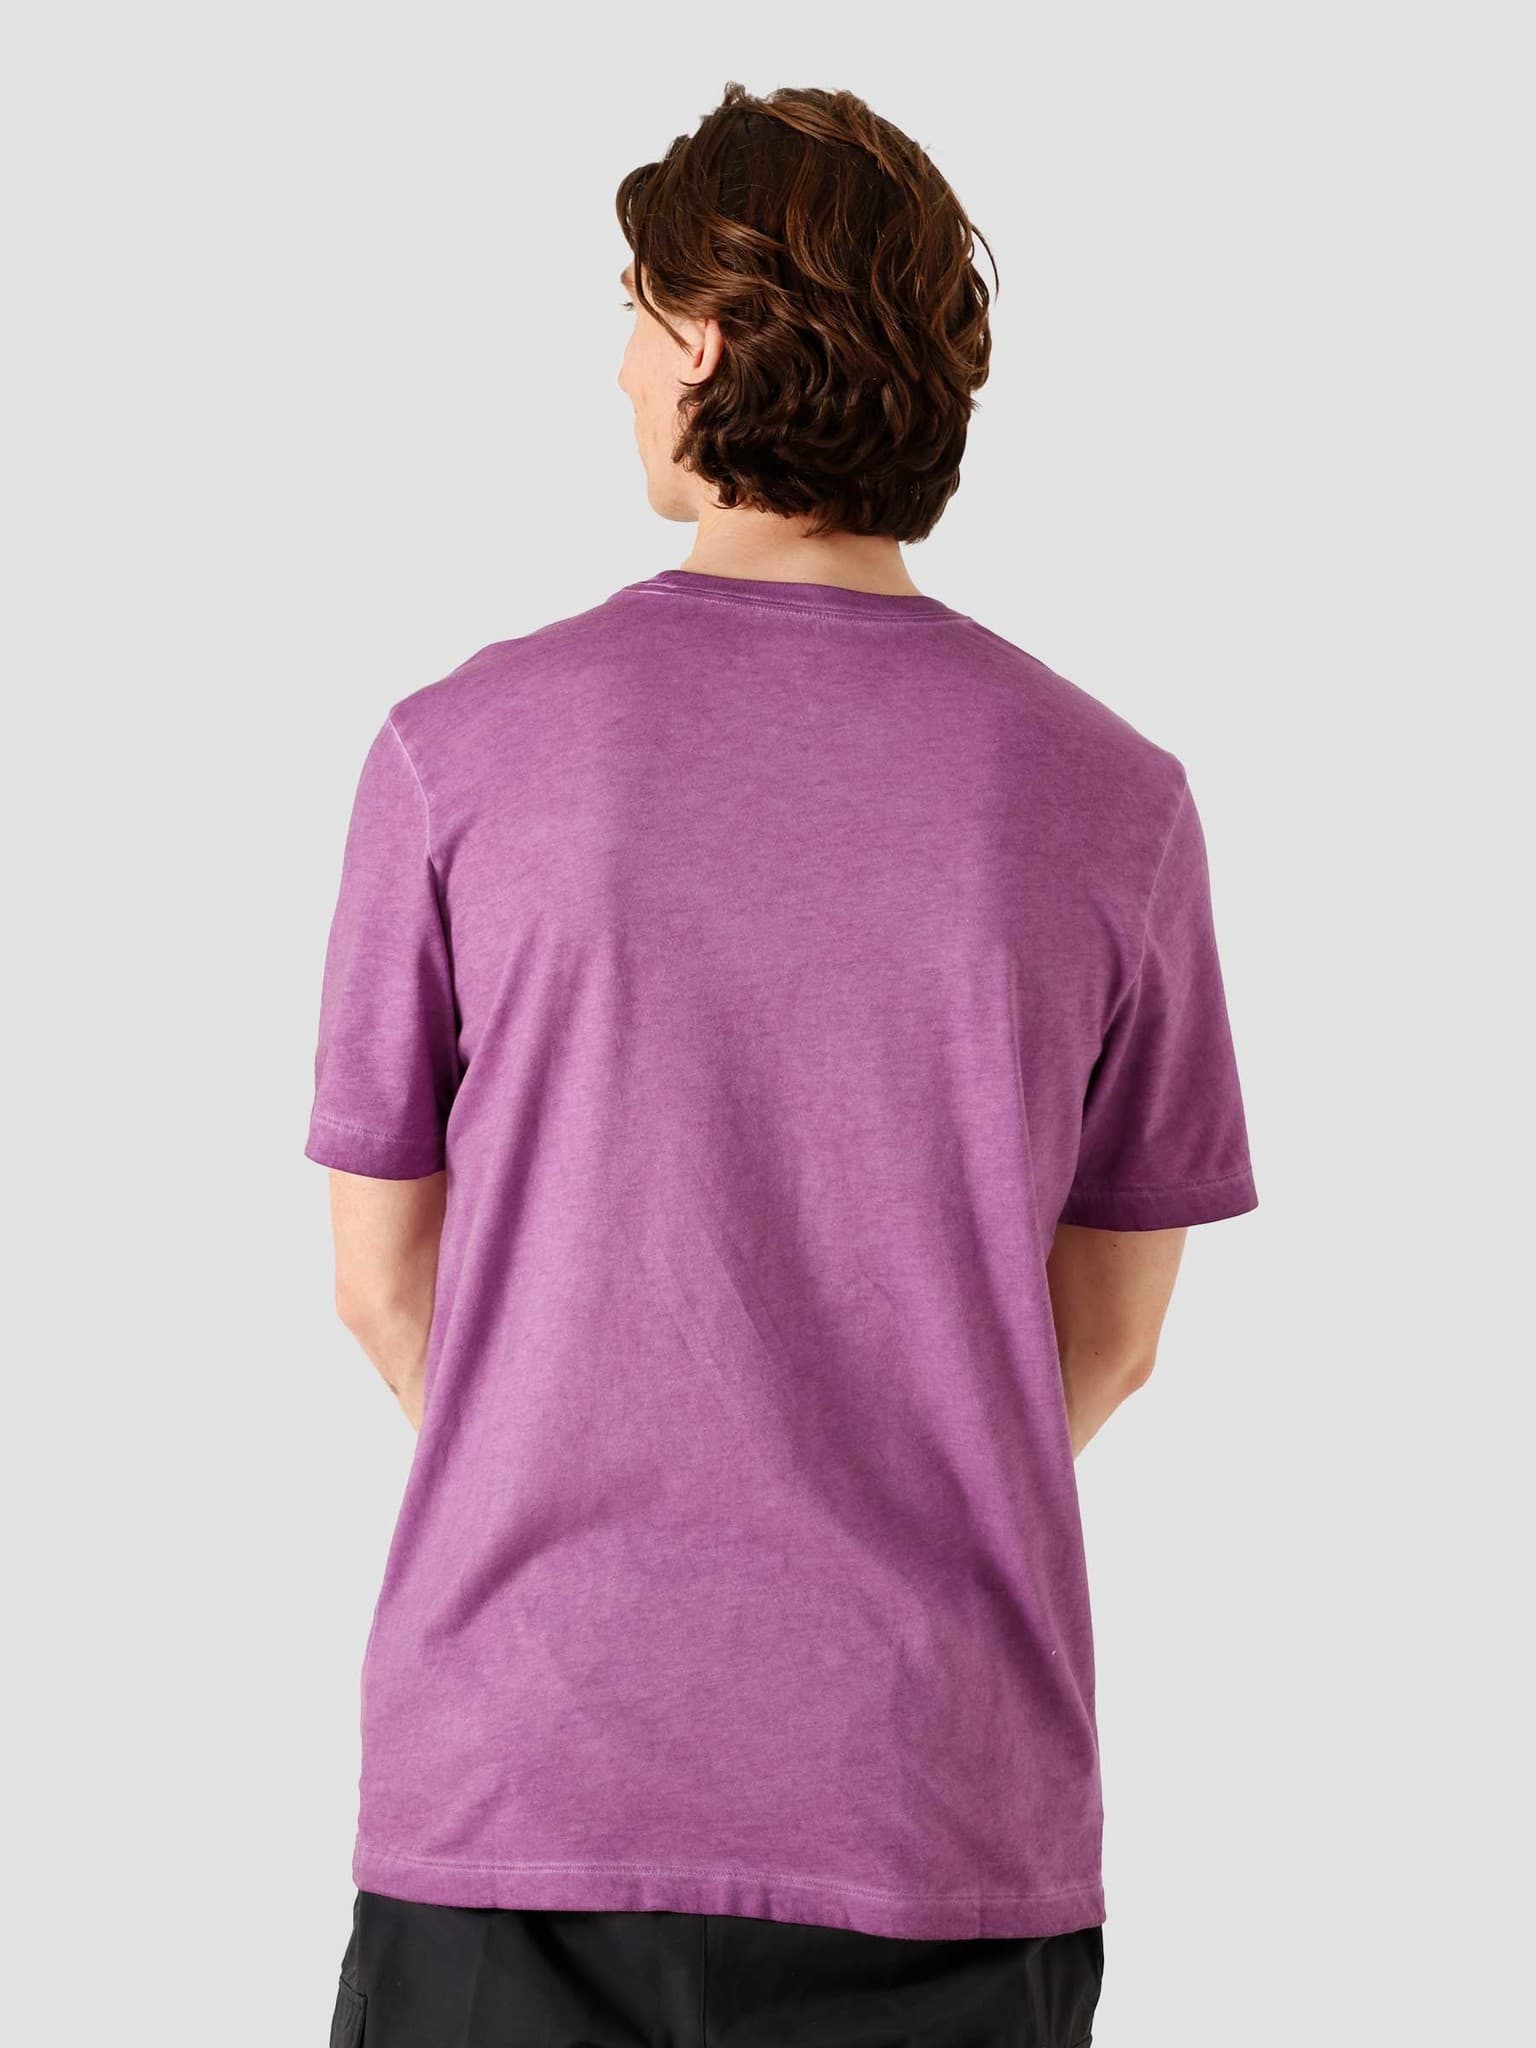 NSW T-Shirt Dye Viotech DB6190-503